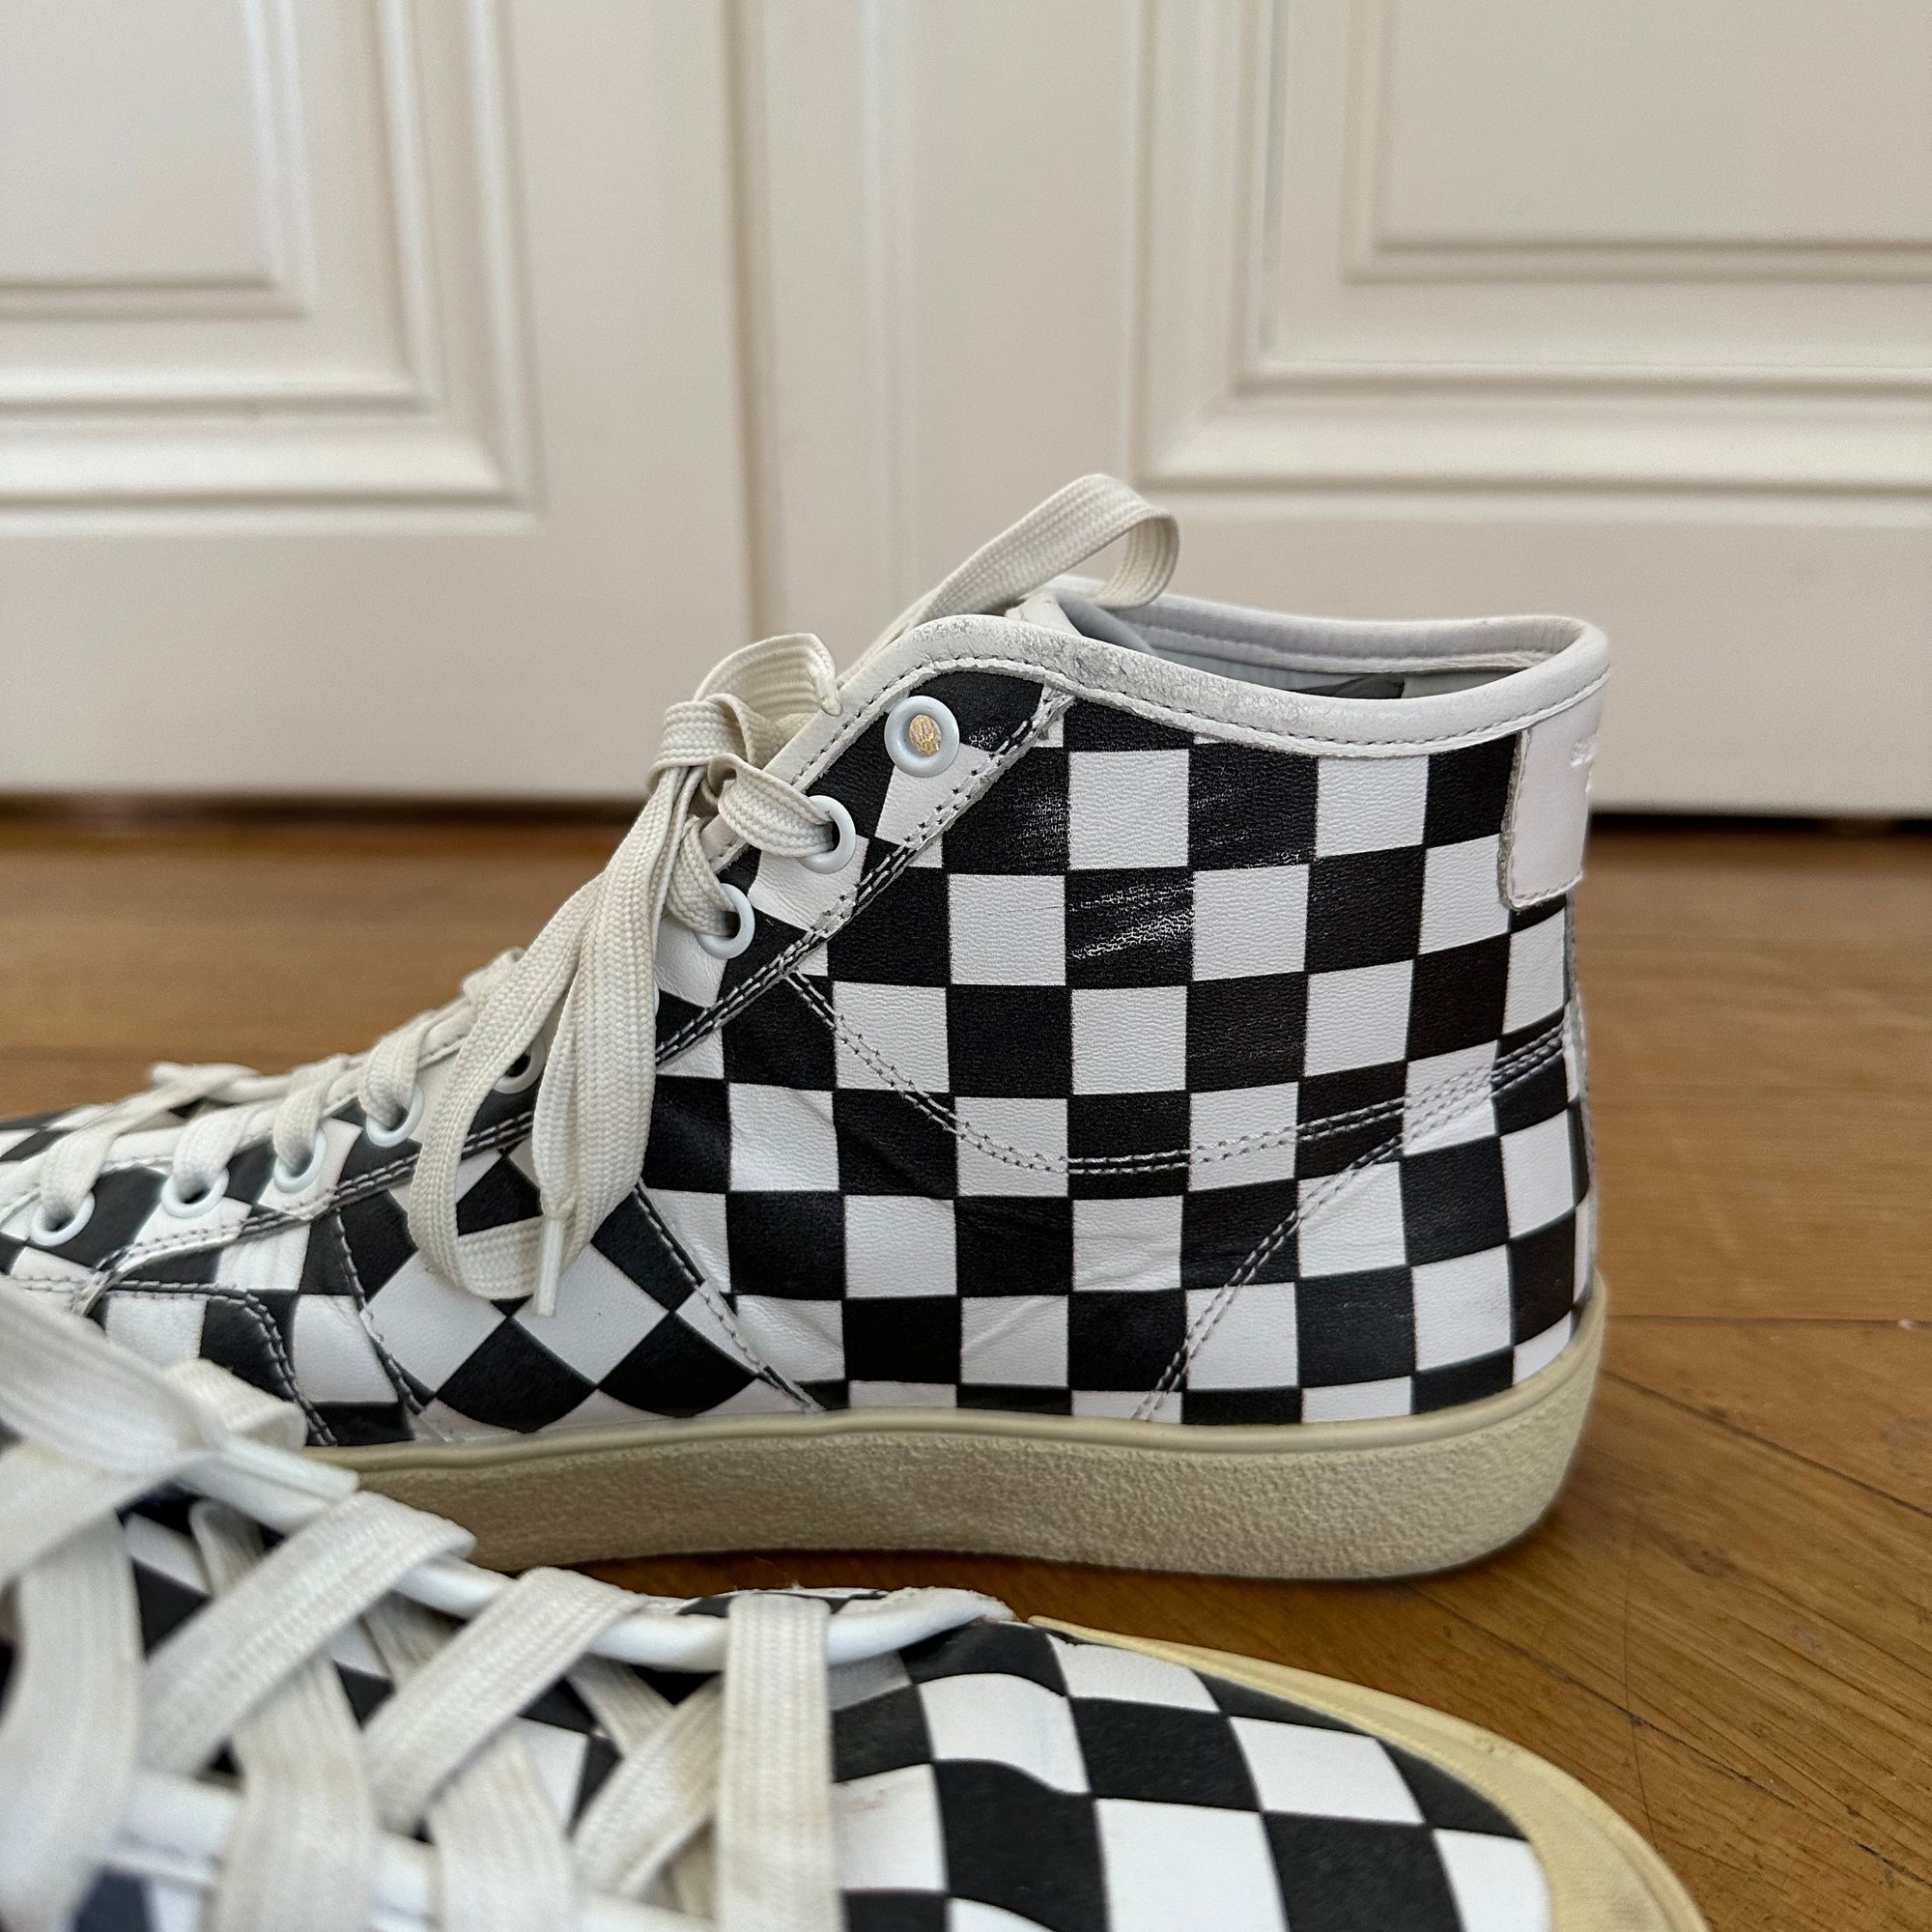 Saint Laurent Paris SS16 Checkerboard Leather SL37/M Sneaker